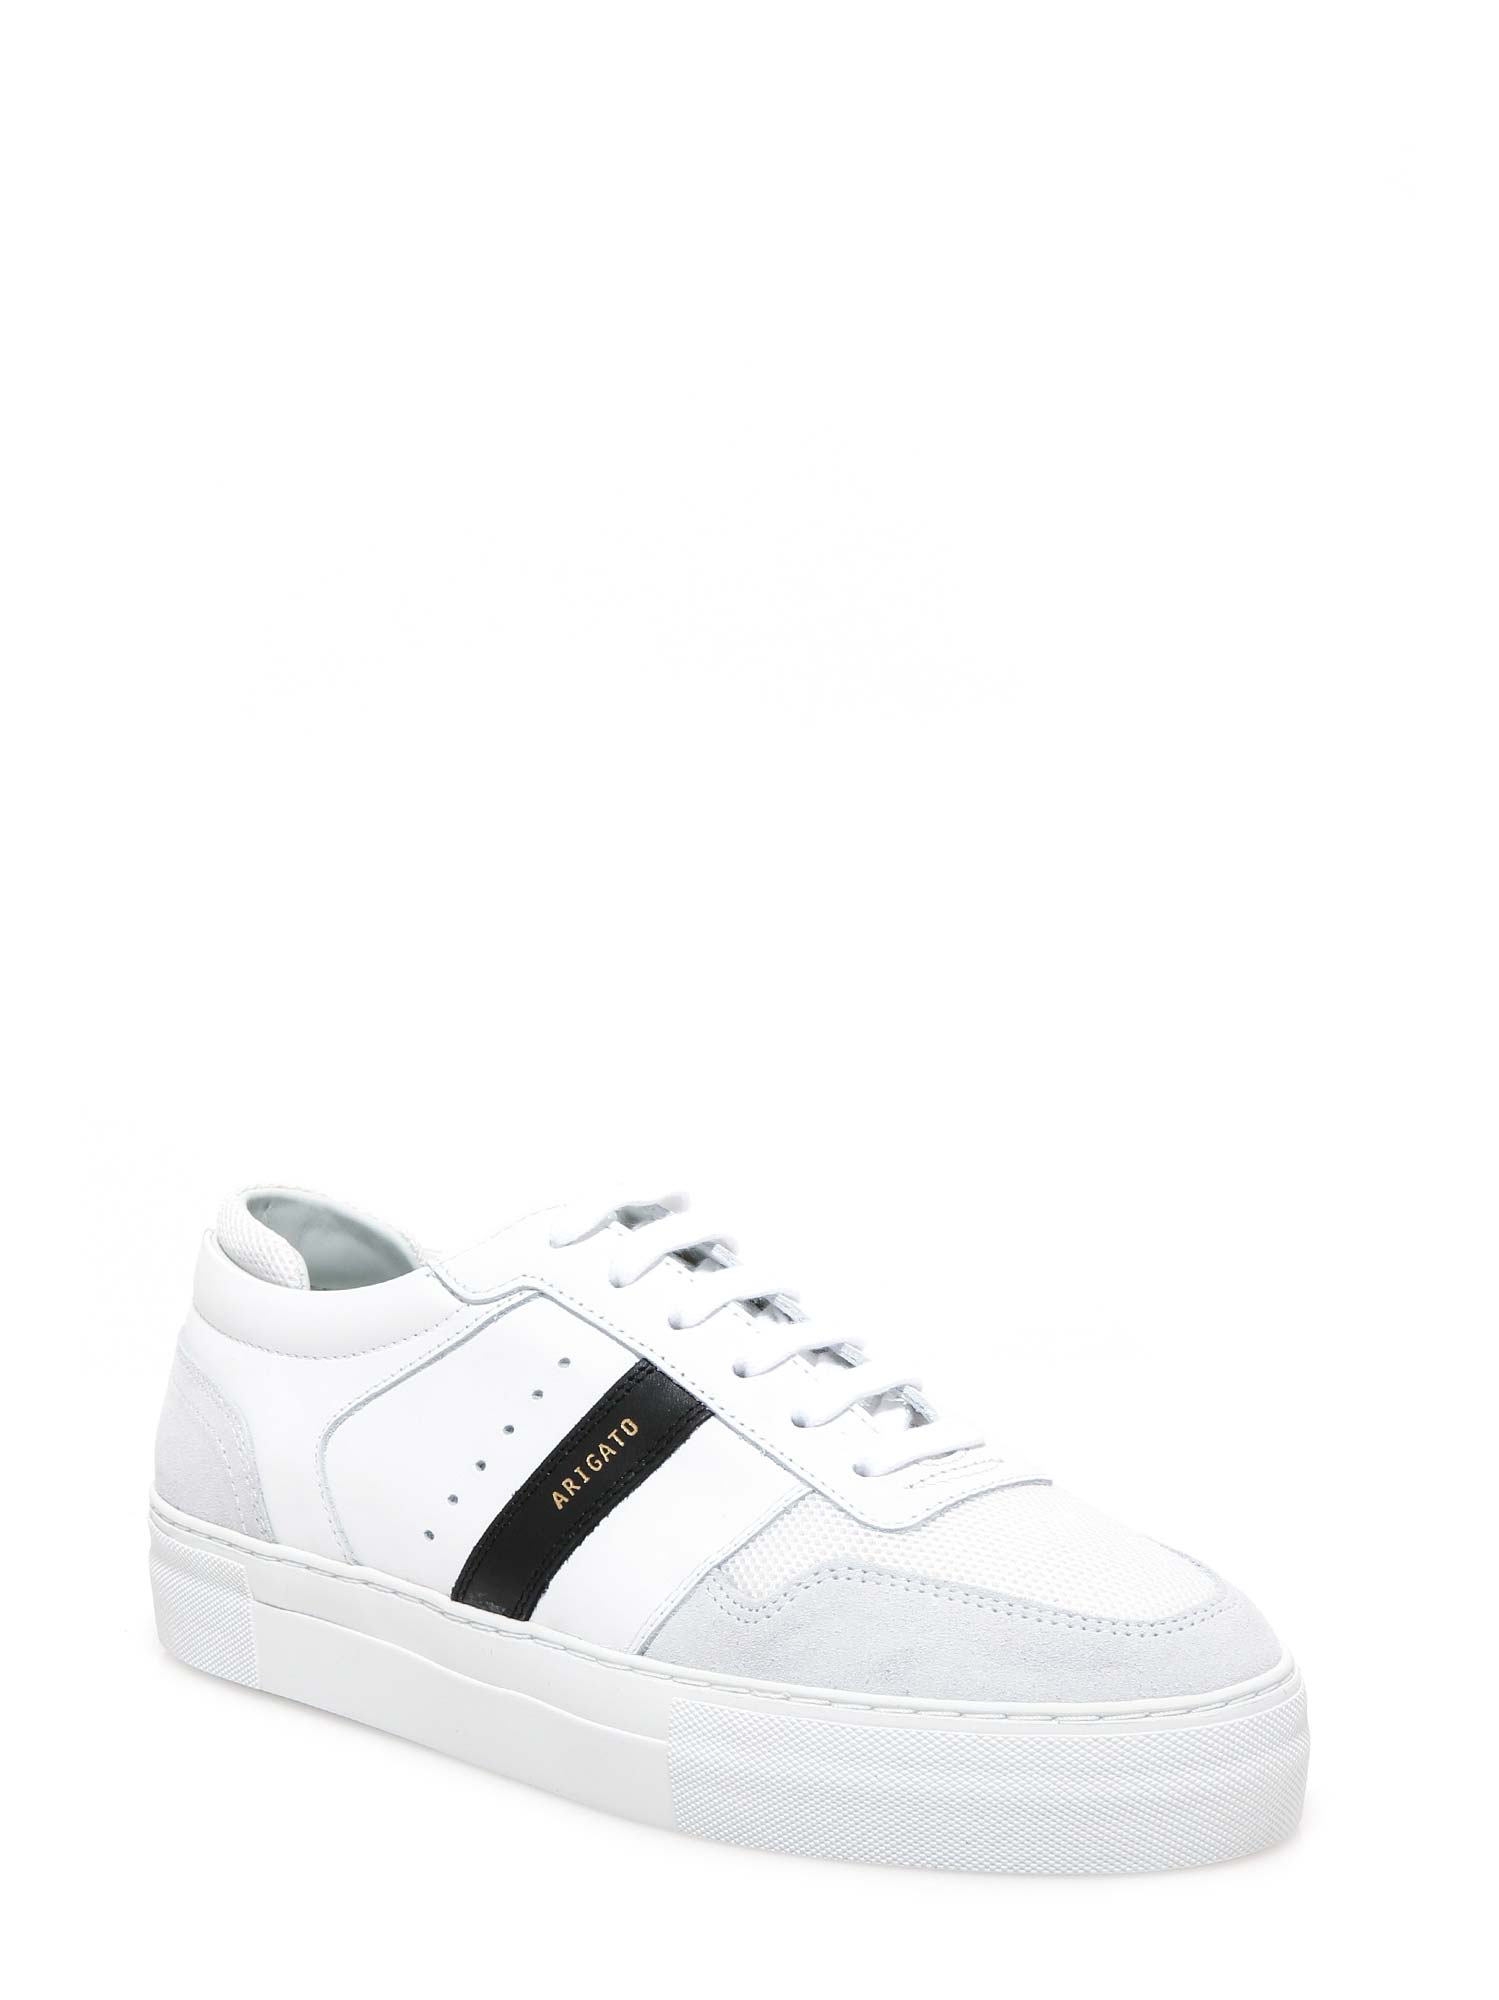 arigato sneakers white